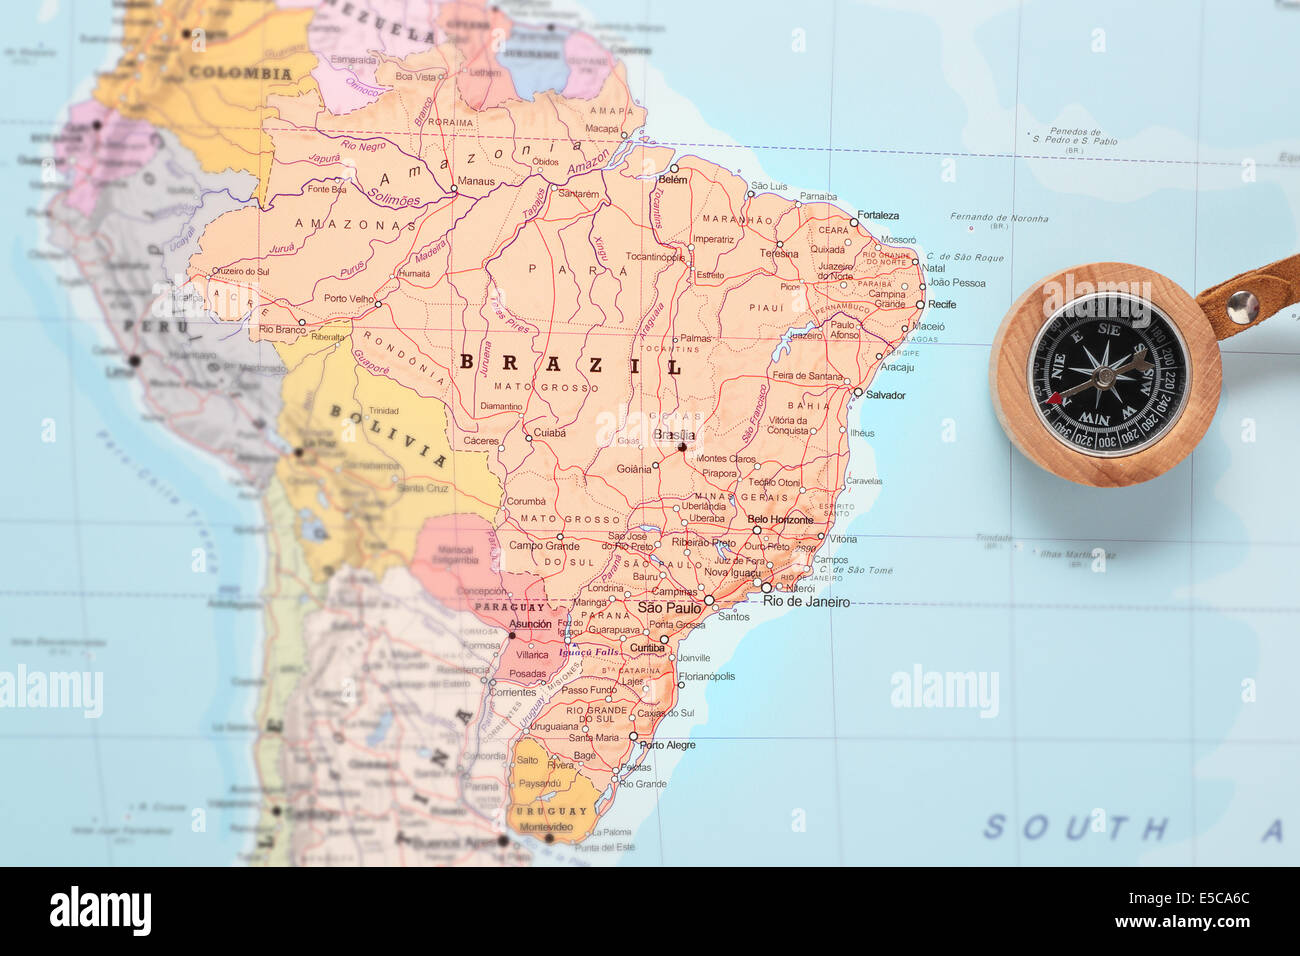 Kompass auf einer Karte zeigt auf Brasilien und planen eine Reise Wert Stockfoto